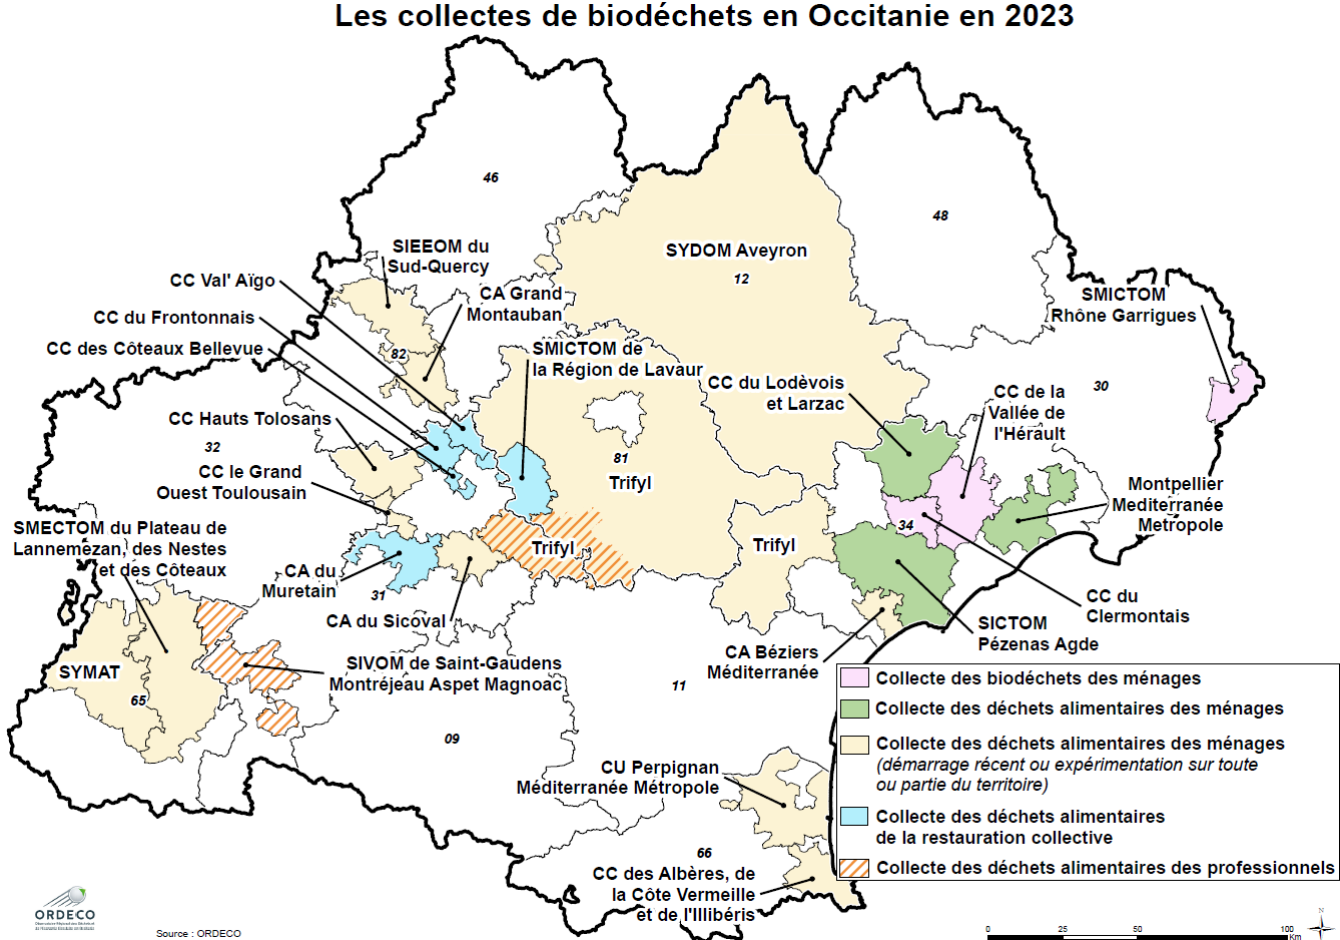 Les collectes de biodéchets en Occitanie en 2023 